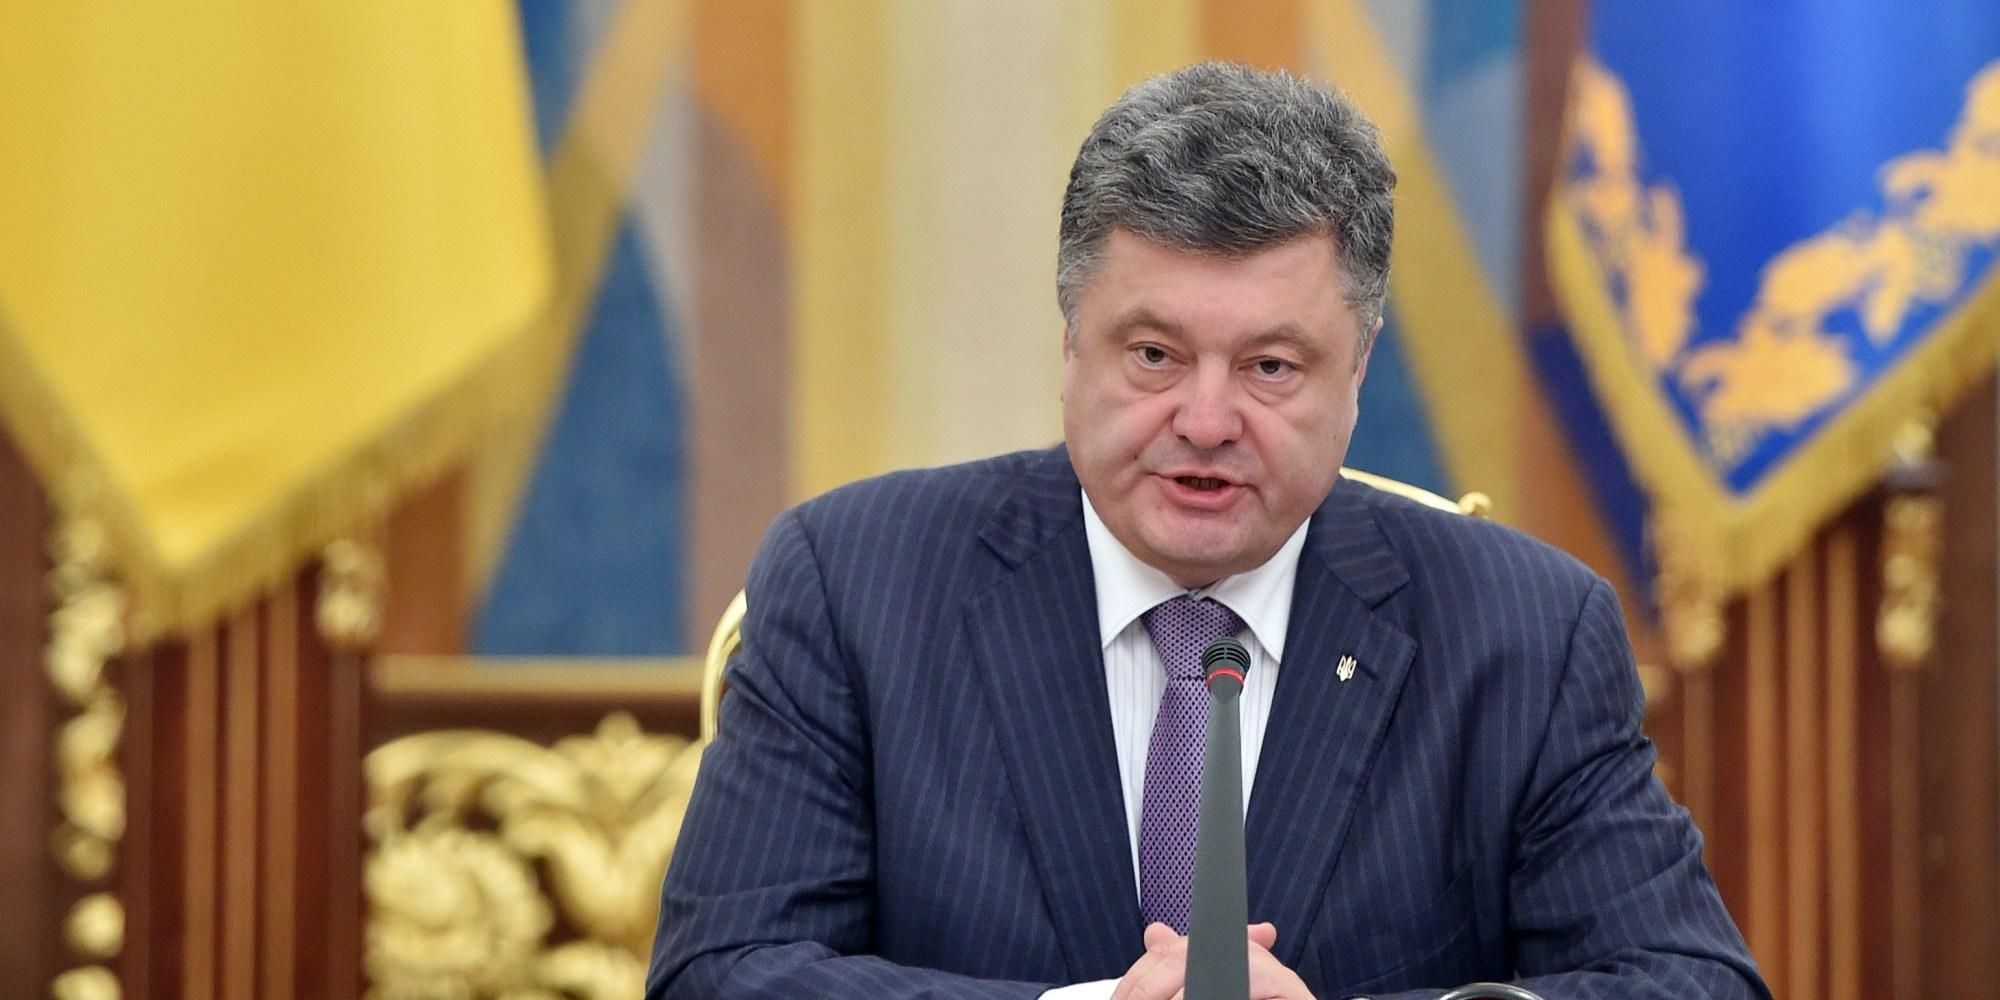 Віддані президенту: ким оточив себе Порошенко за три роки правління Україною